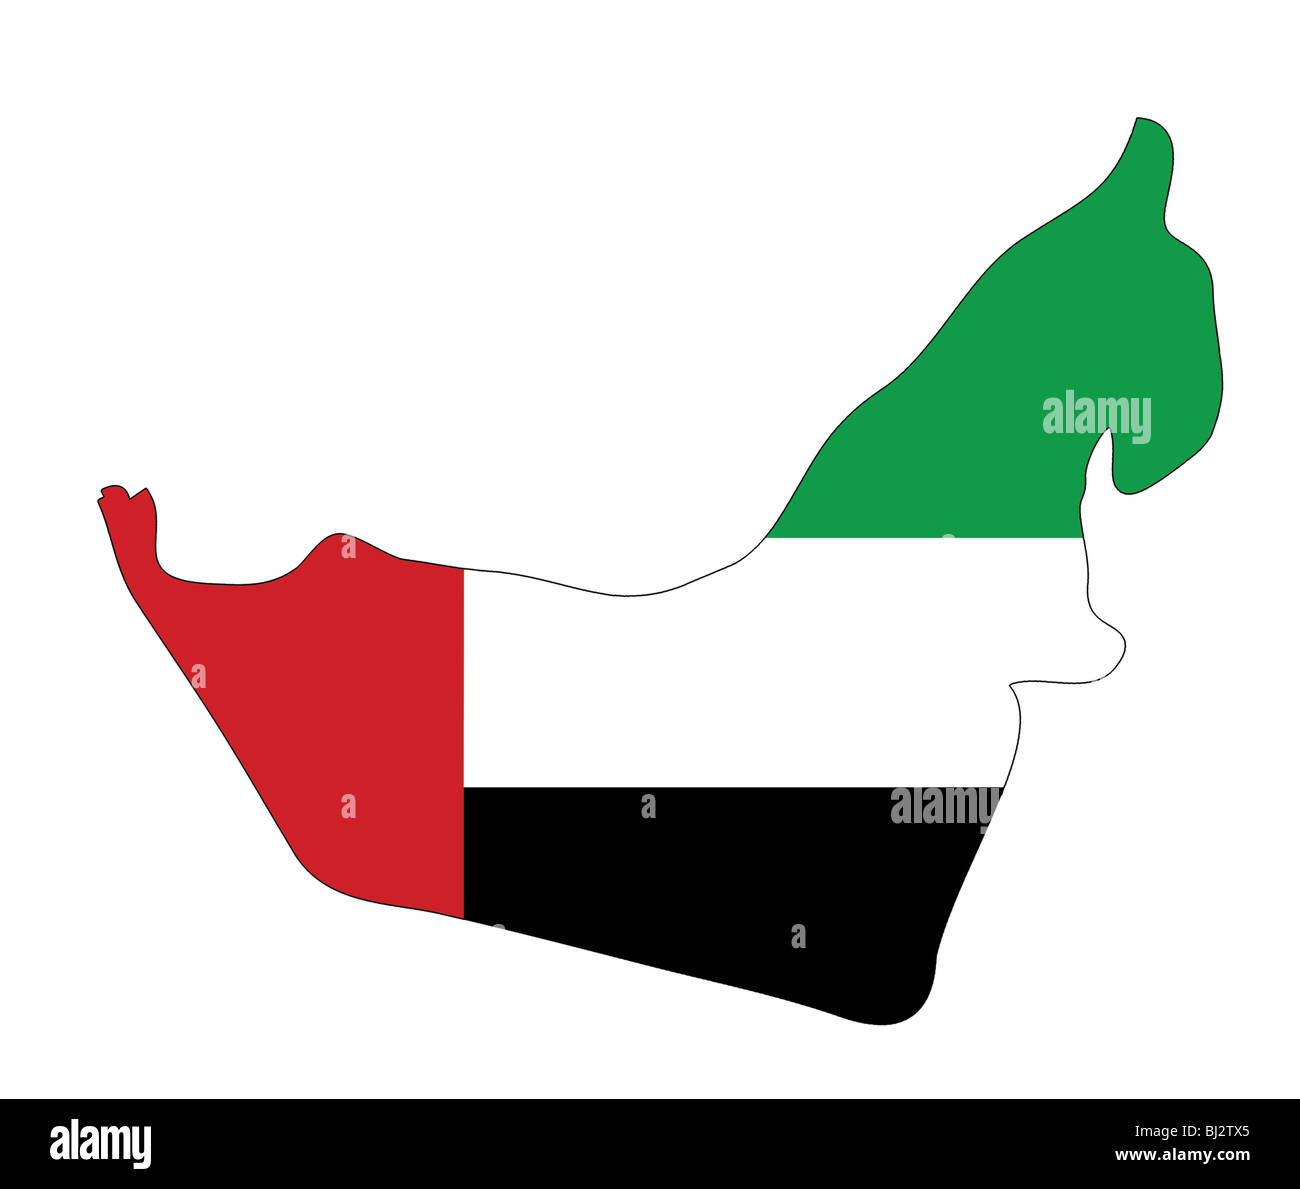 Emirats Arabes Unis carte avec des couleurs nationales Banque D'Images